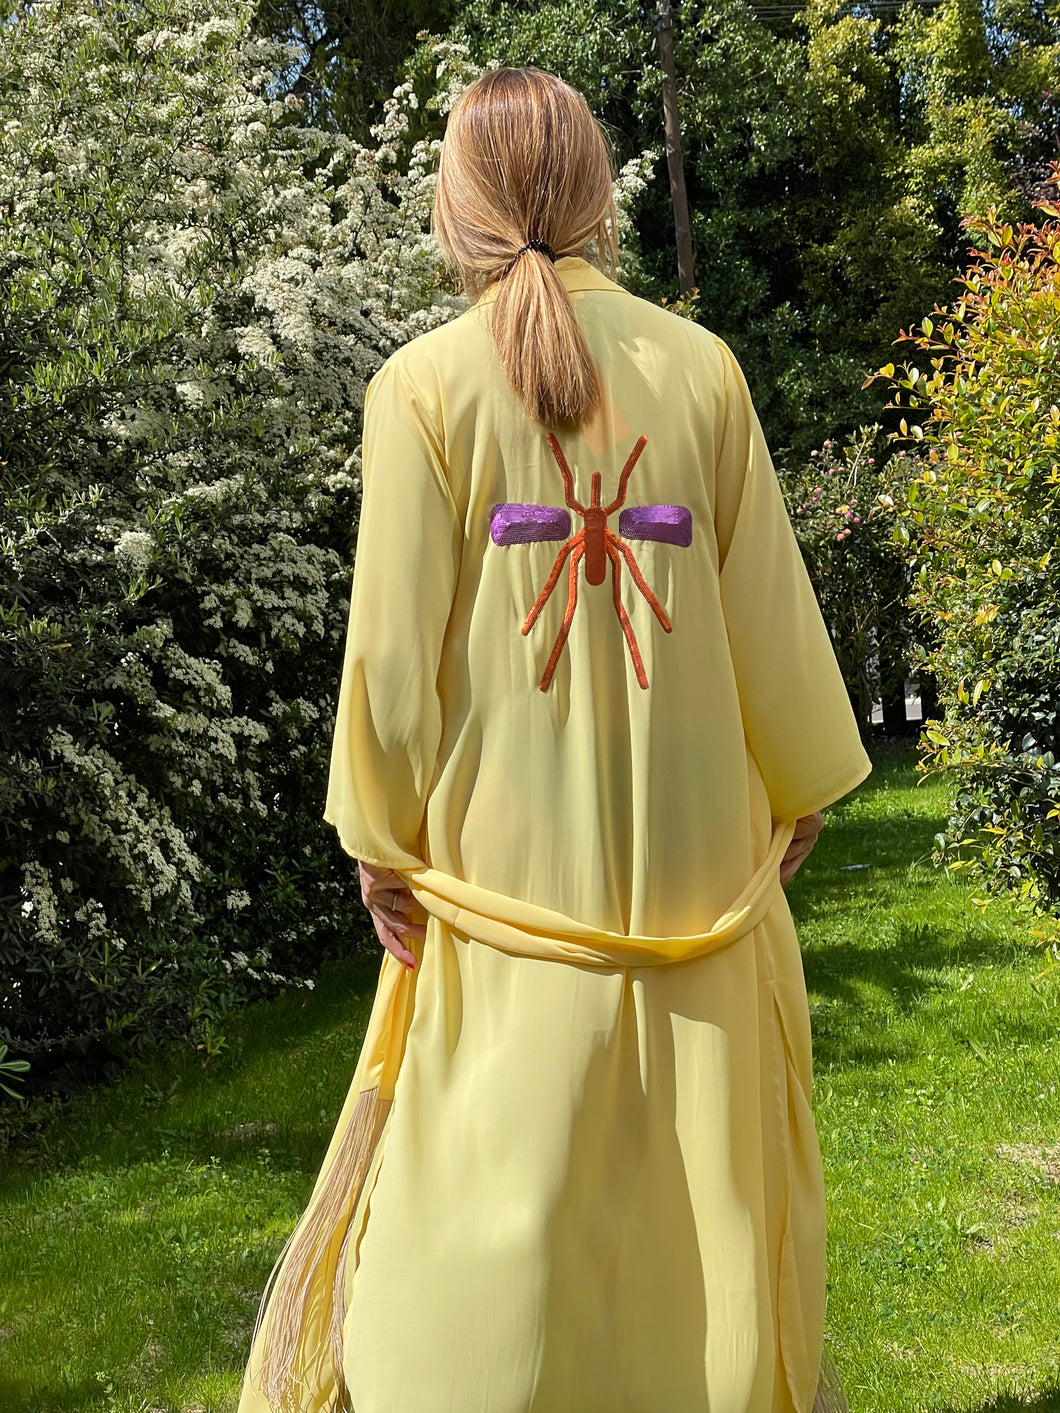 Kimono Yellow Exclusivo Mosquito Laranja/Roxo